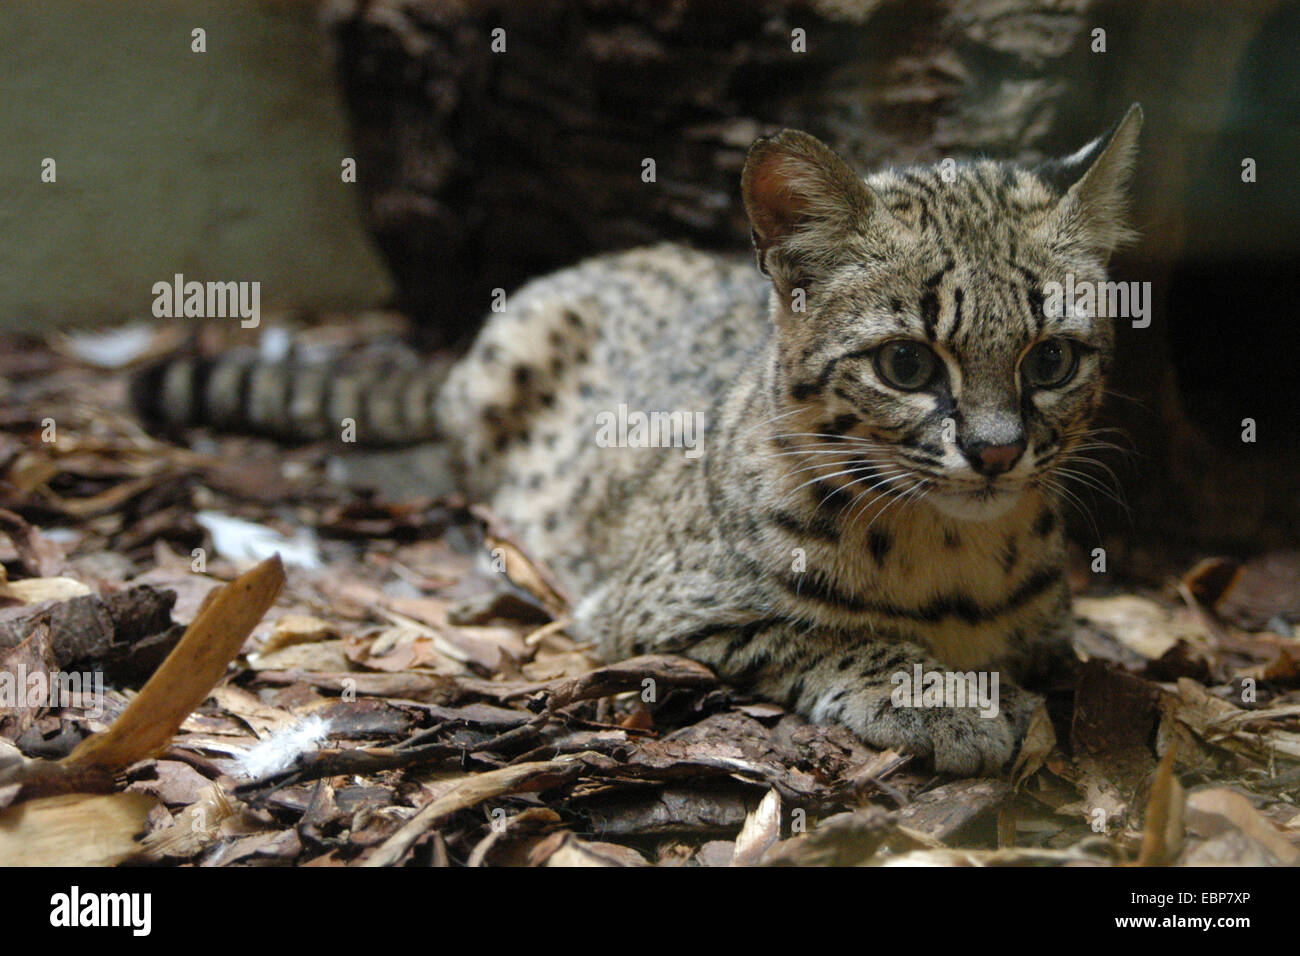 Geoffroy's cat (Leopardus geoffroyi) at Jihlava Zoo in Eastern Bohemia, Czech Republic. Stock Photo